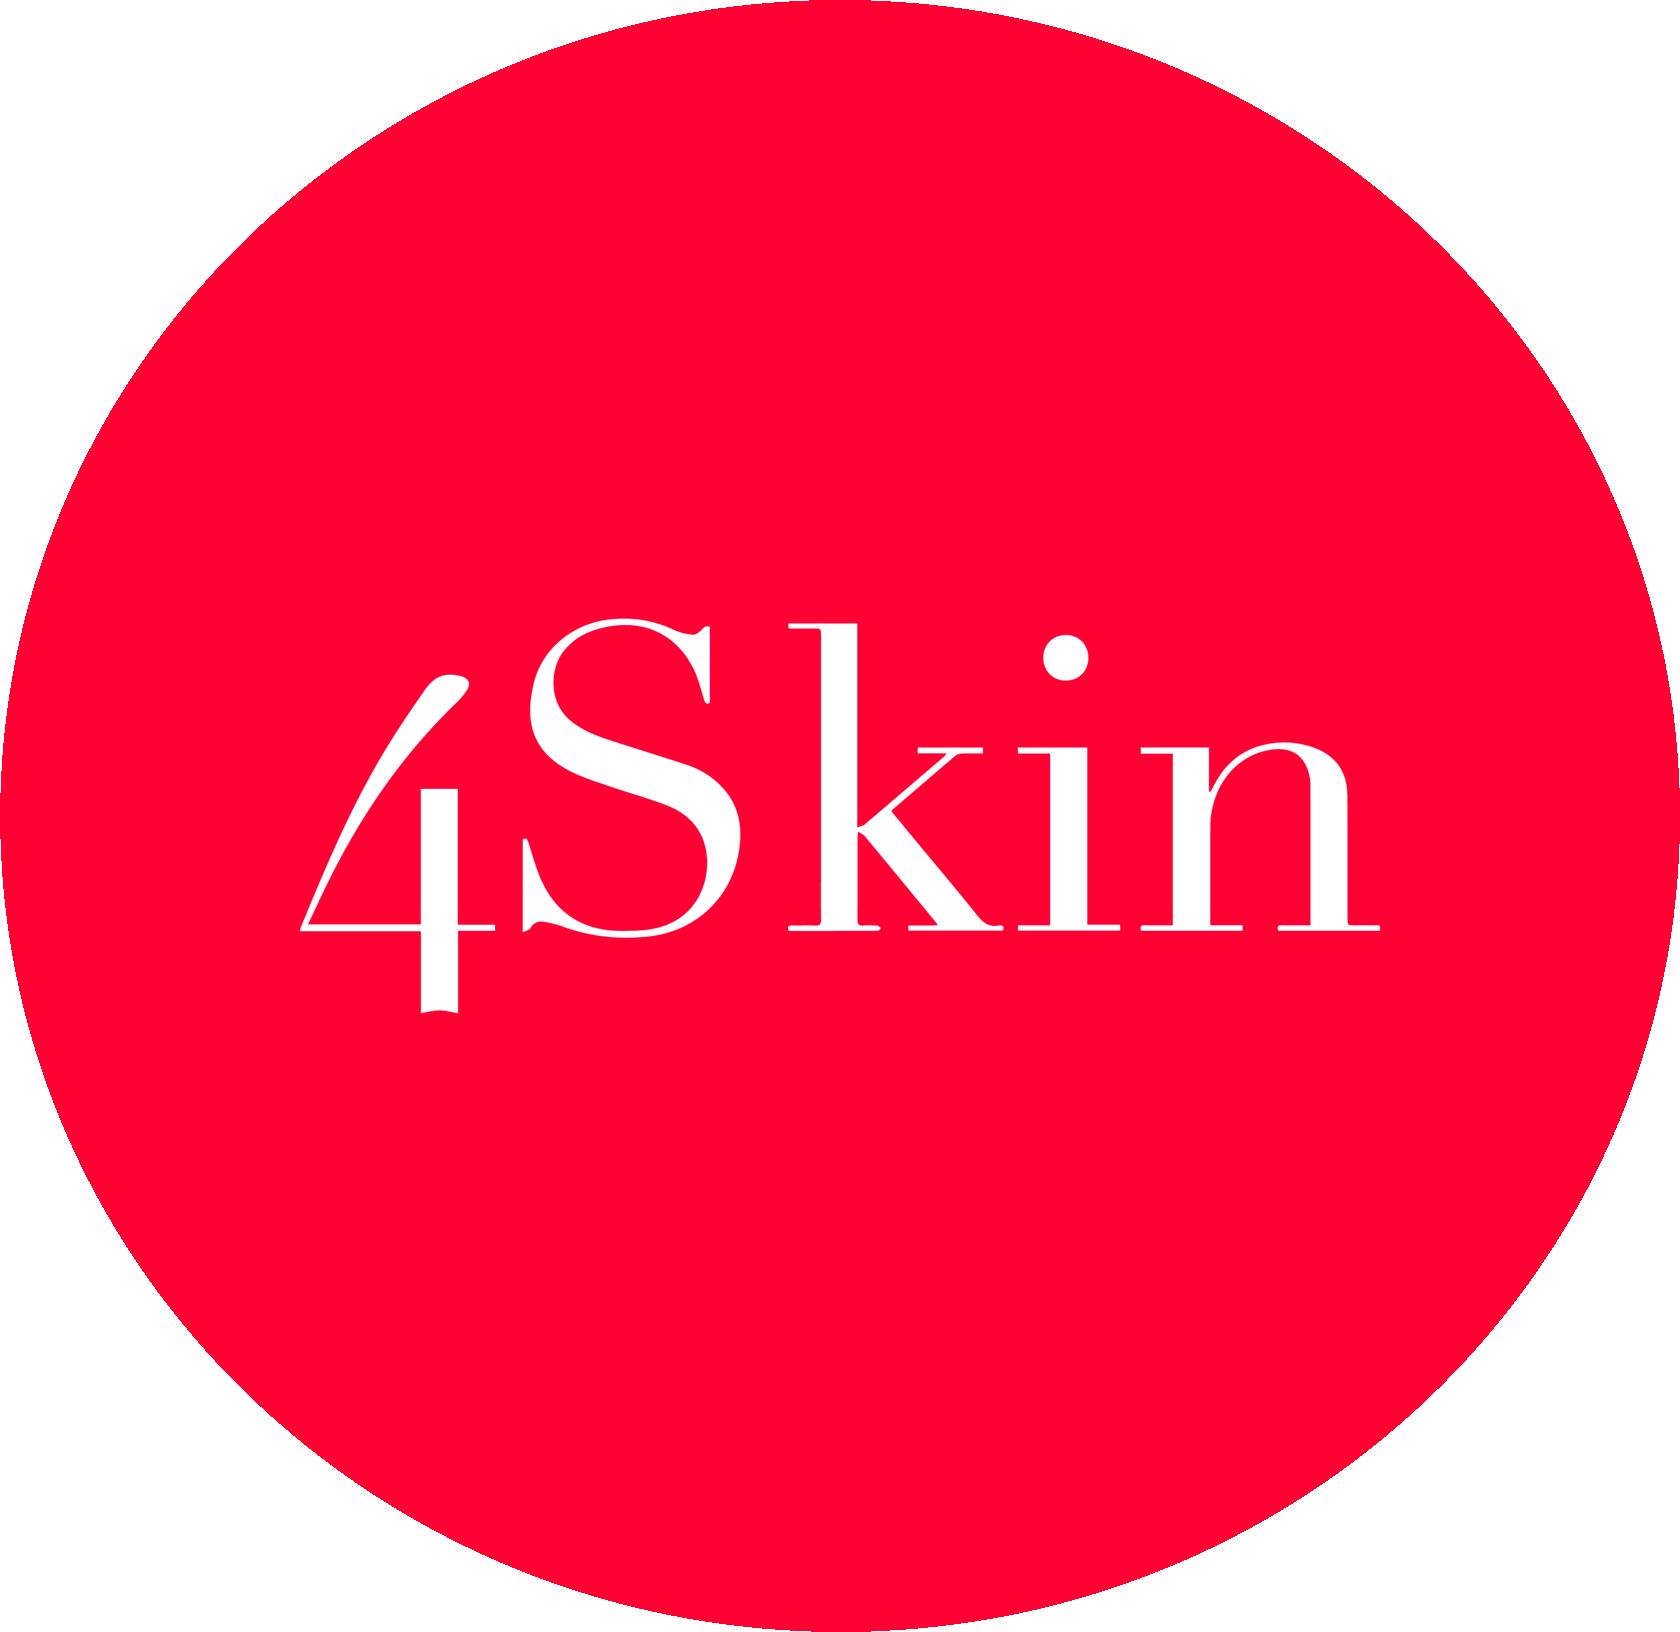 4скин - официальный дистрибьютер корейской косметики в России